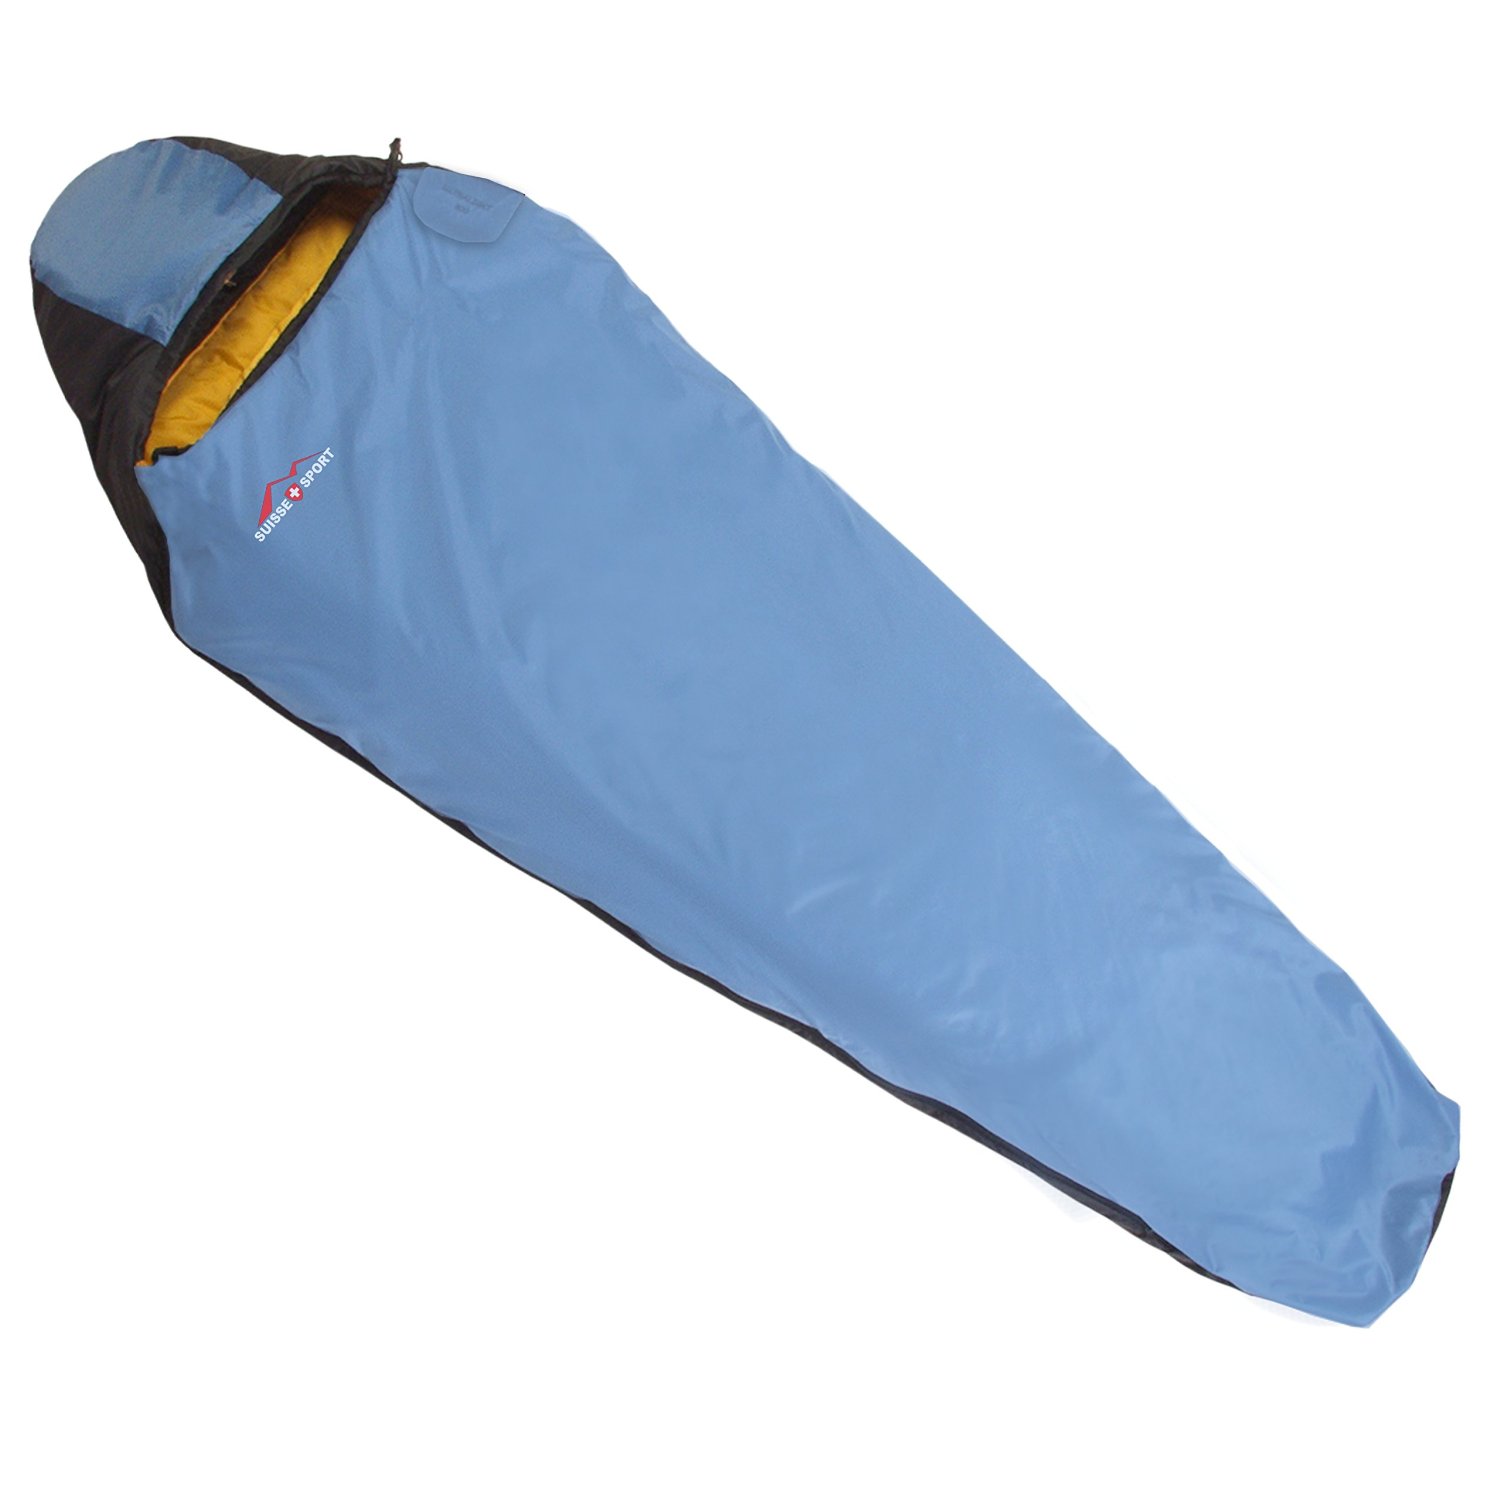 waterproof sleeping bags